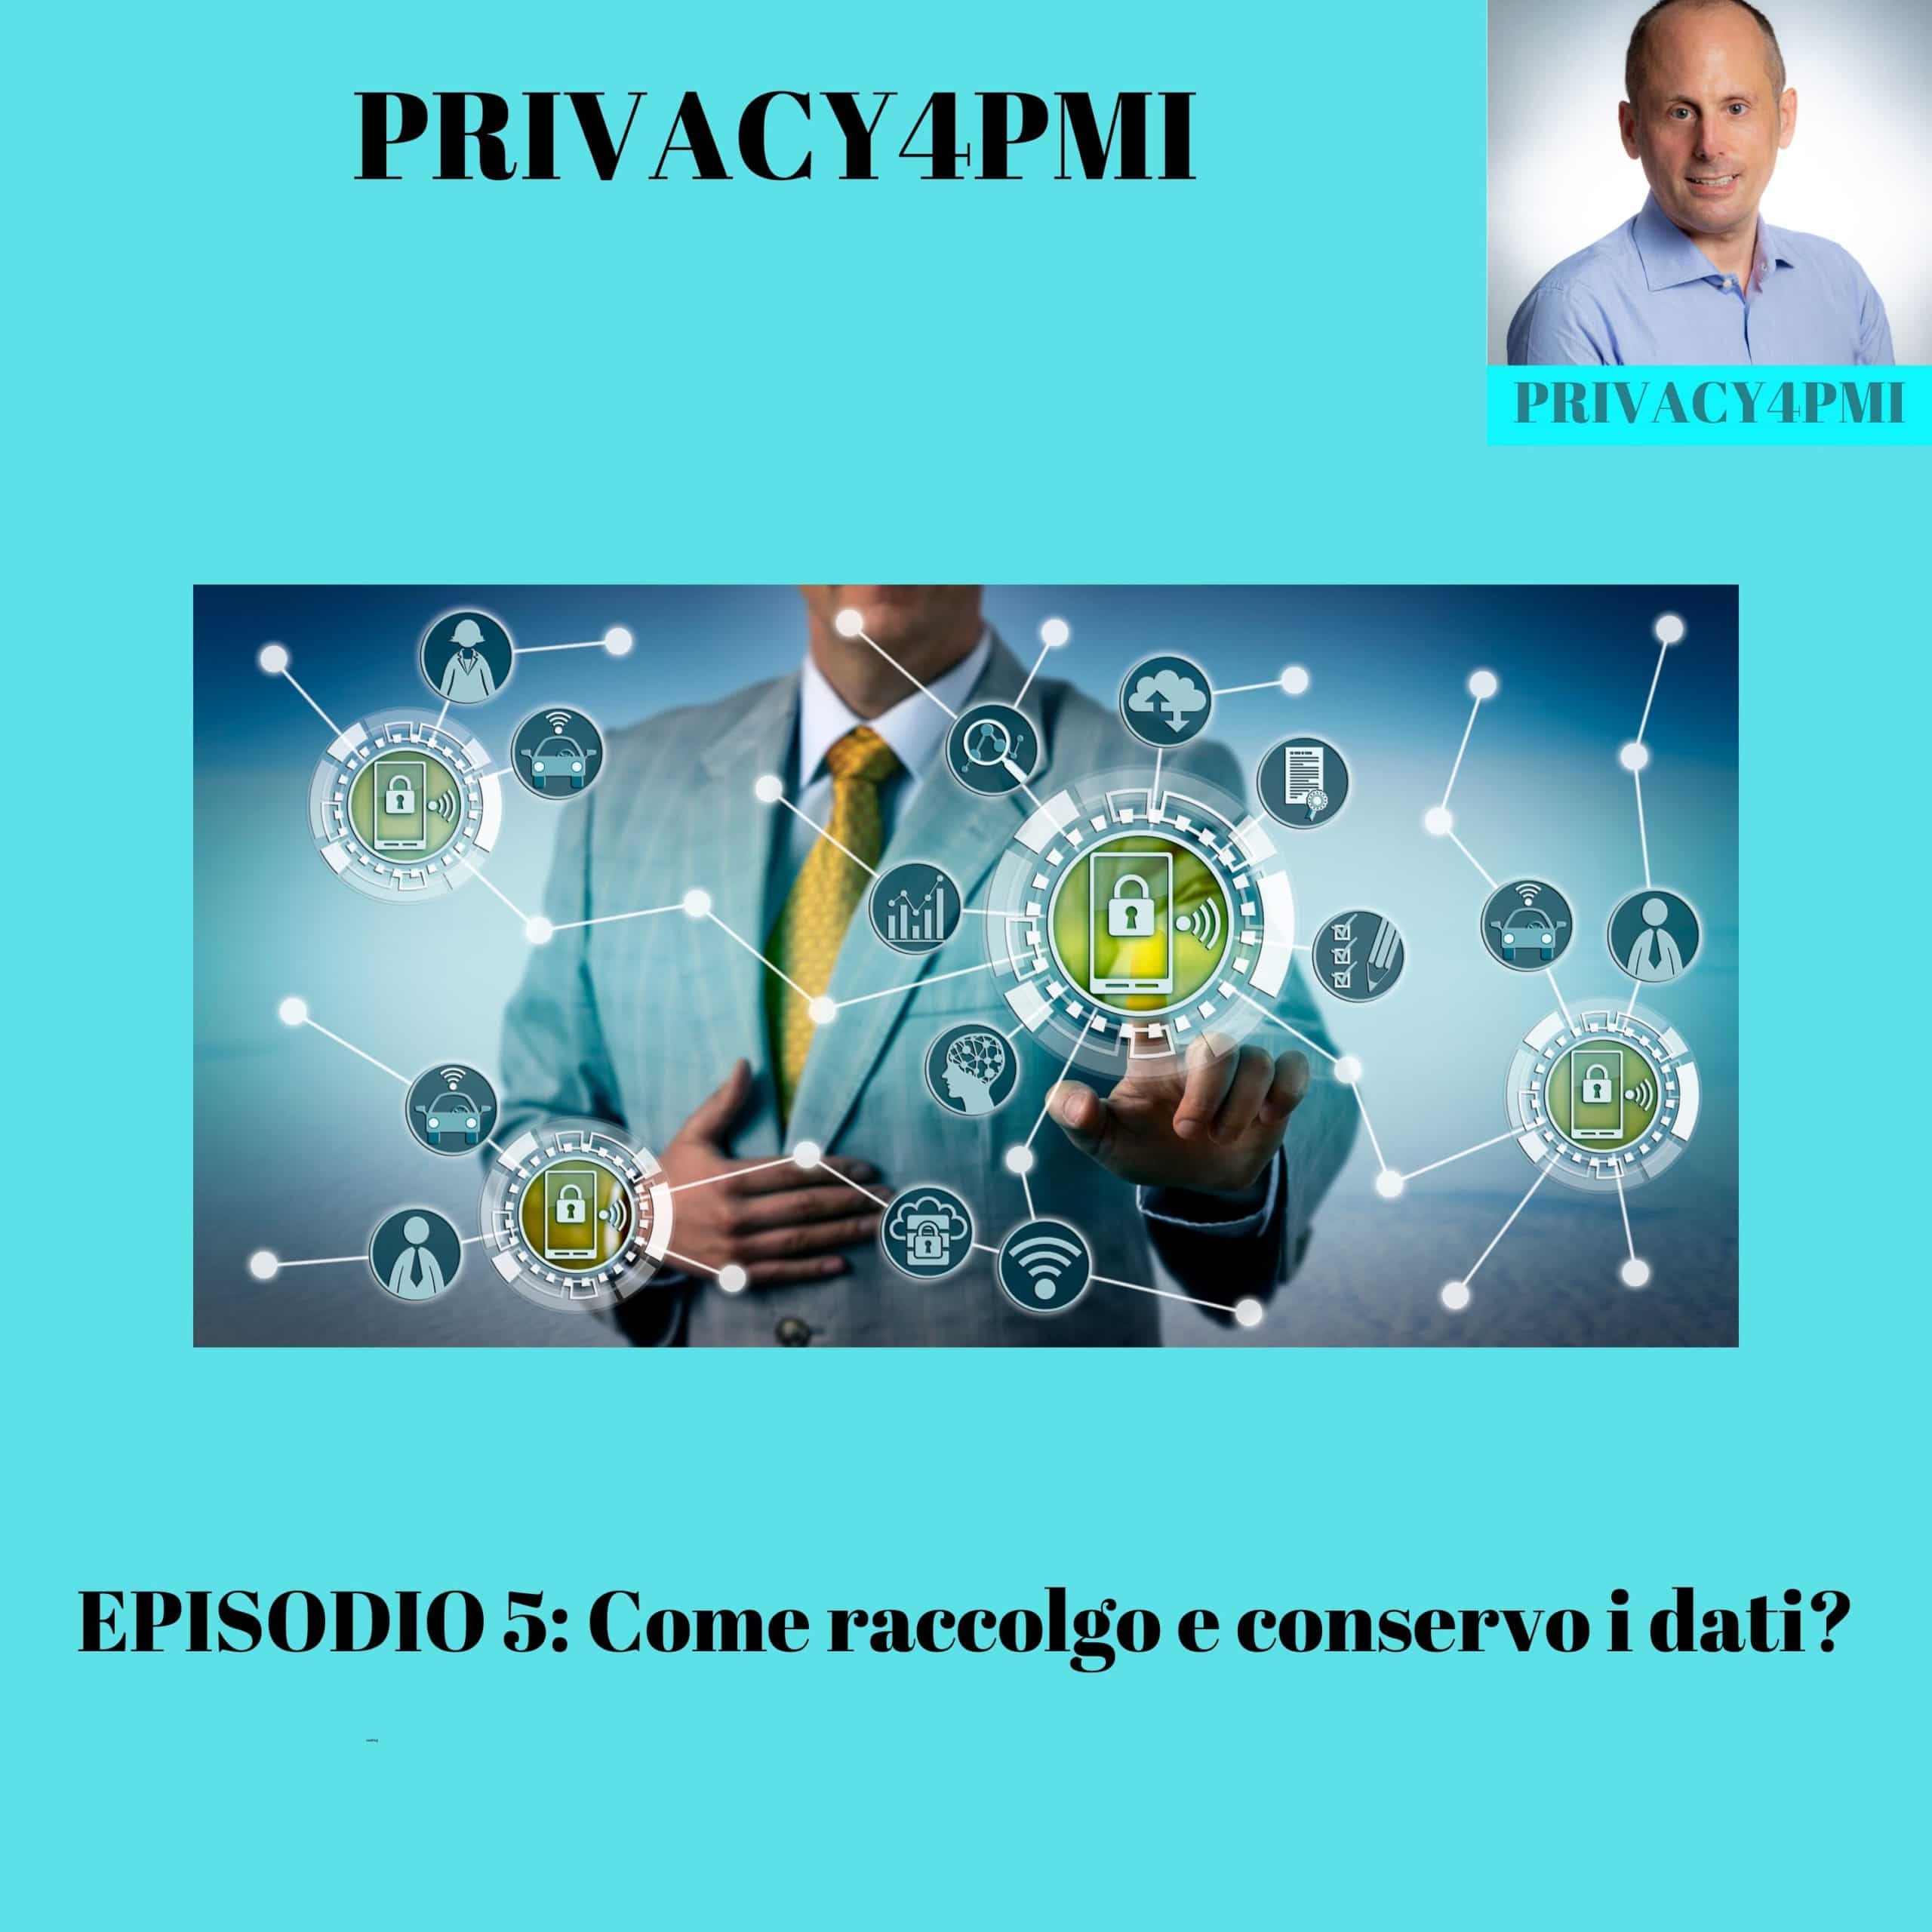 Raccolta e conservazione dati. Come la faccio? Ne parla Edoardo Facchini, consulente privacy, in questo episodio 5 del suo podcast Privacy4PMI dal titolo "Come raccolgo e conservo i dati?"